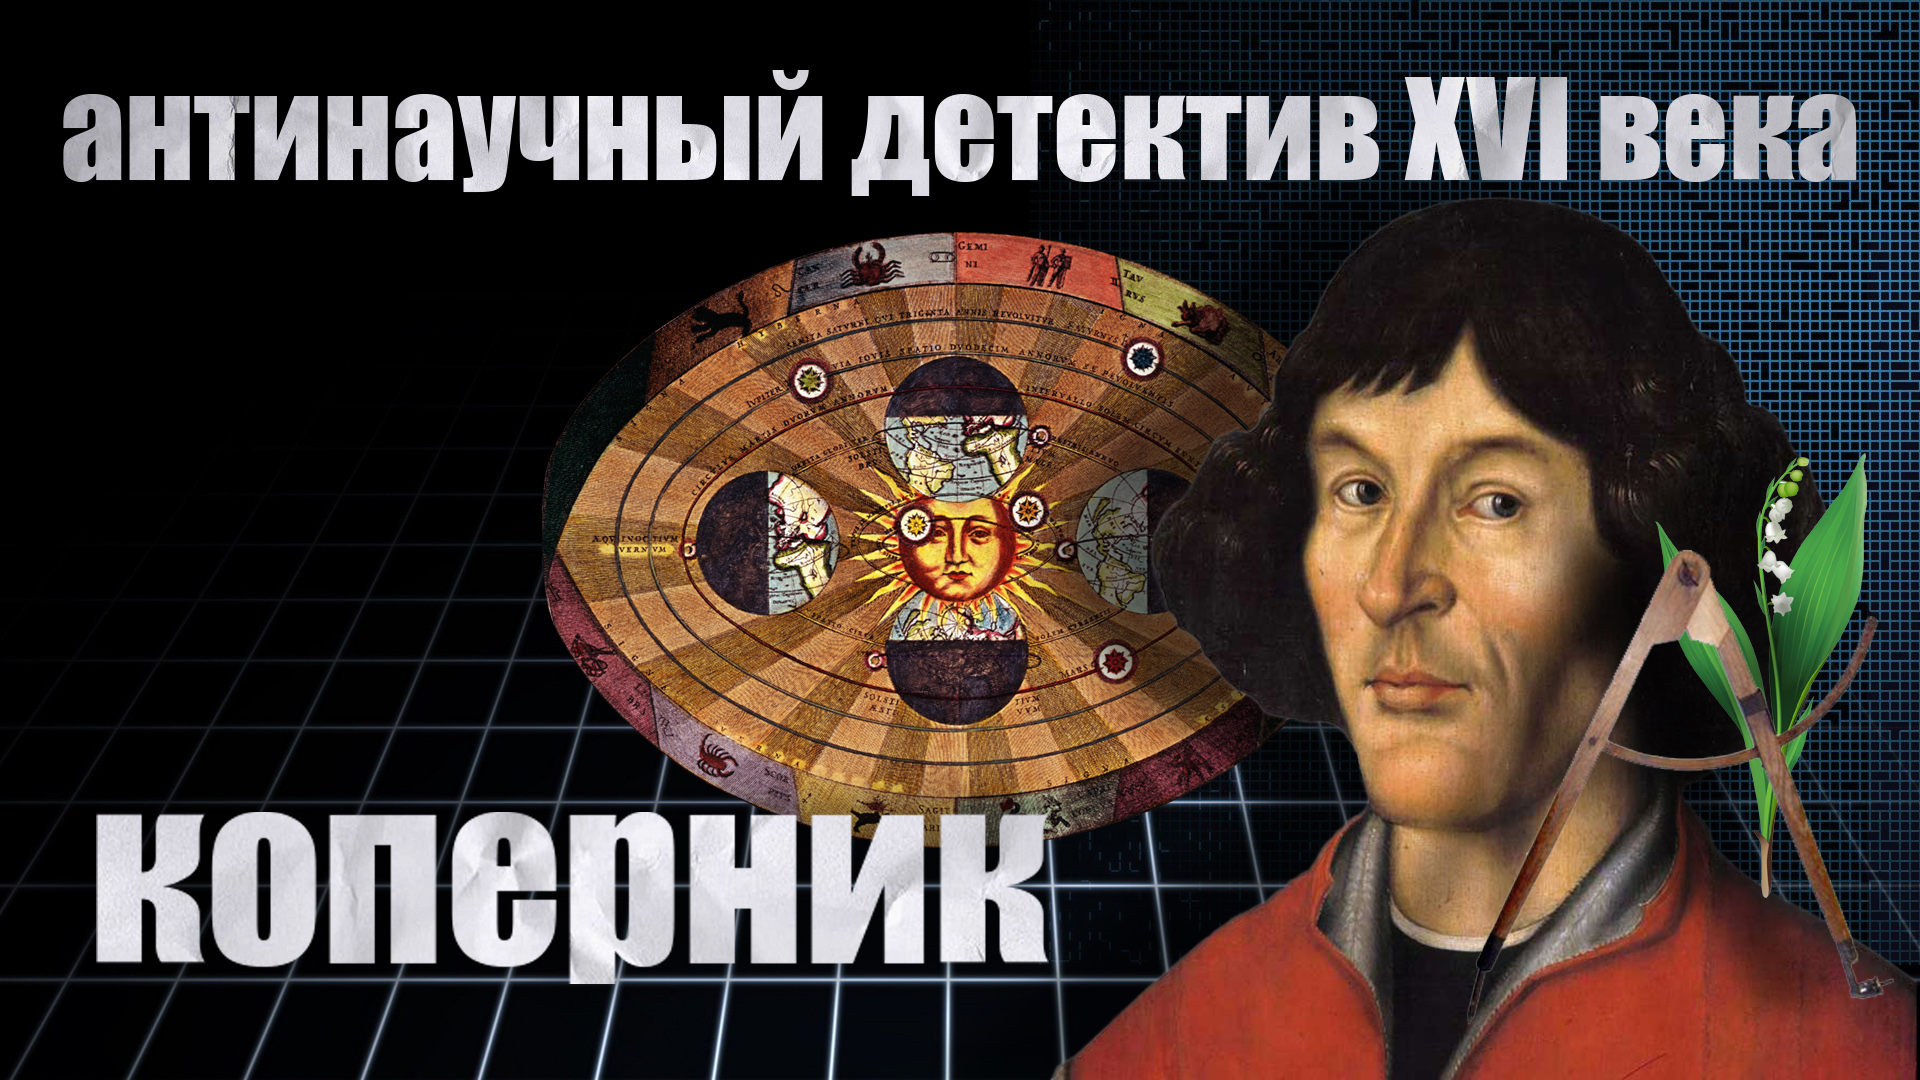 Антинаучный детектив 16 века: Коперник